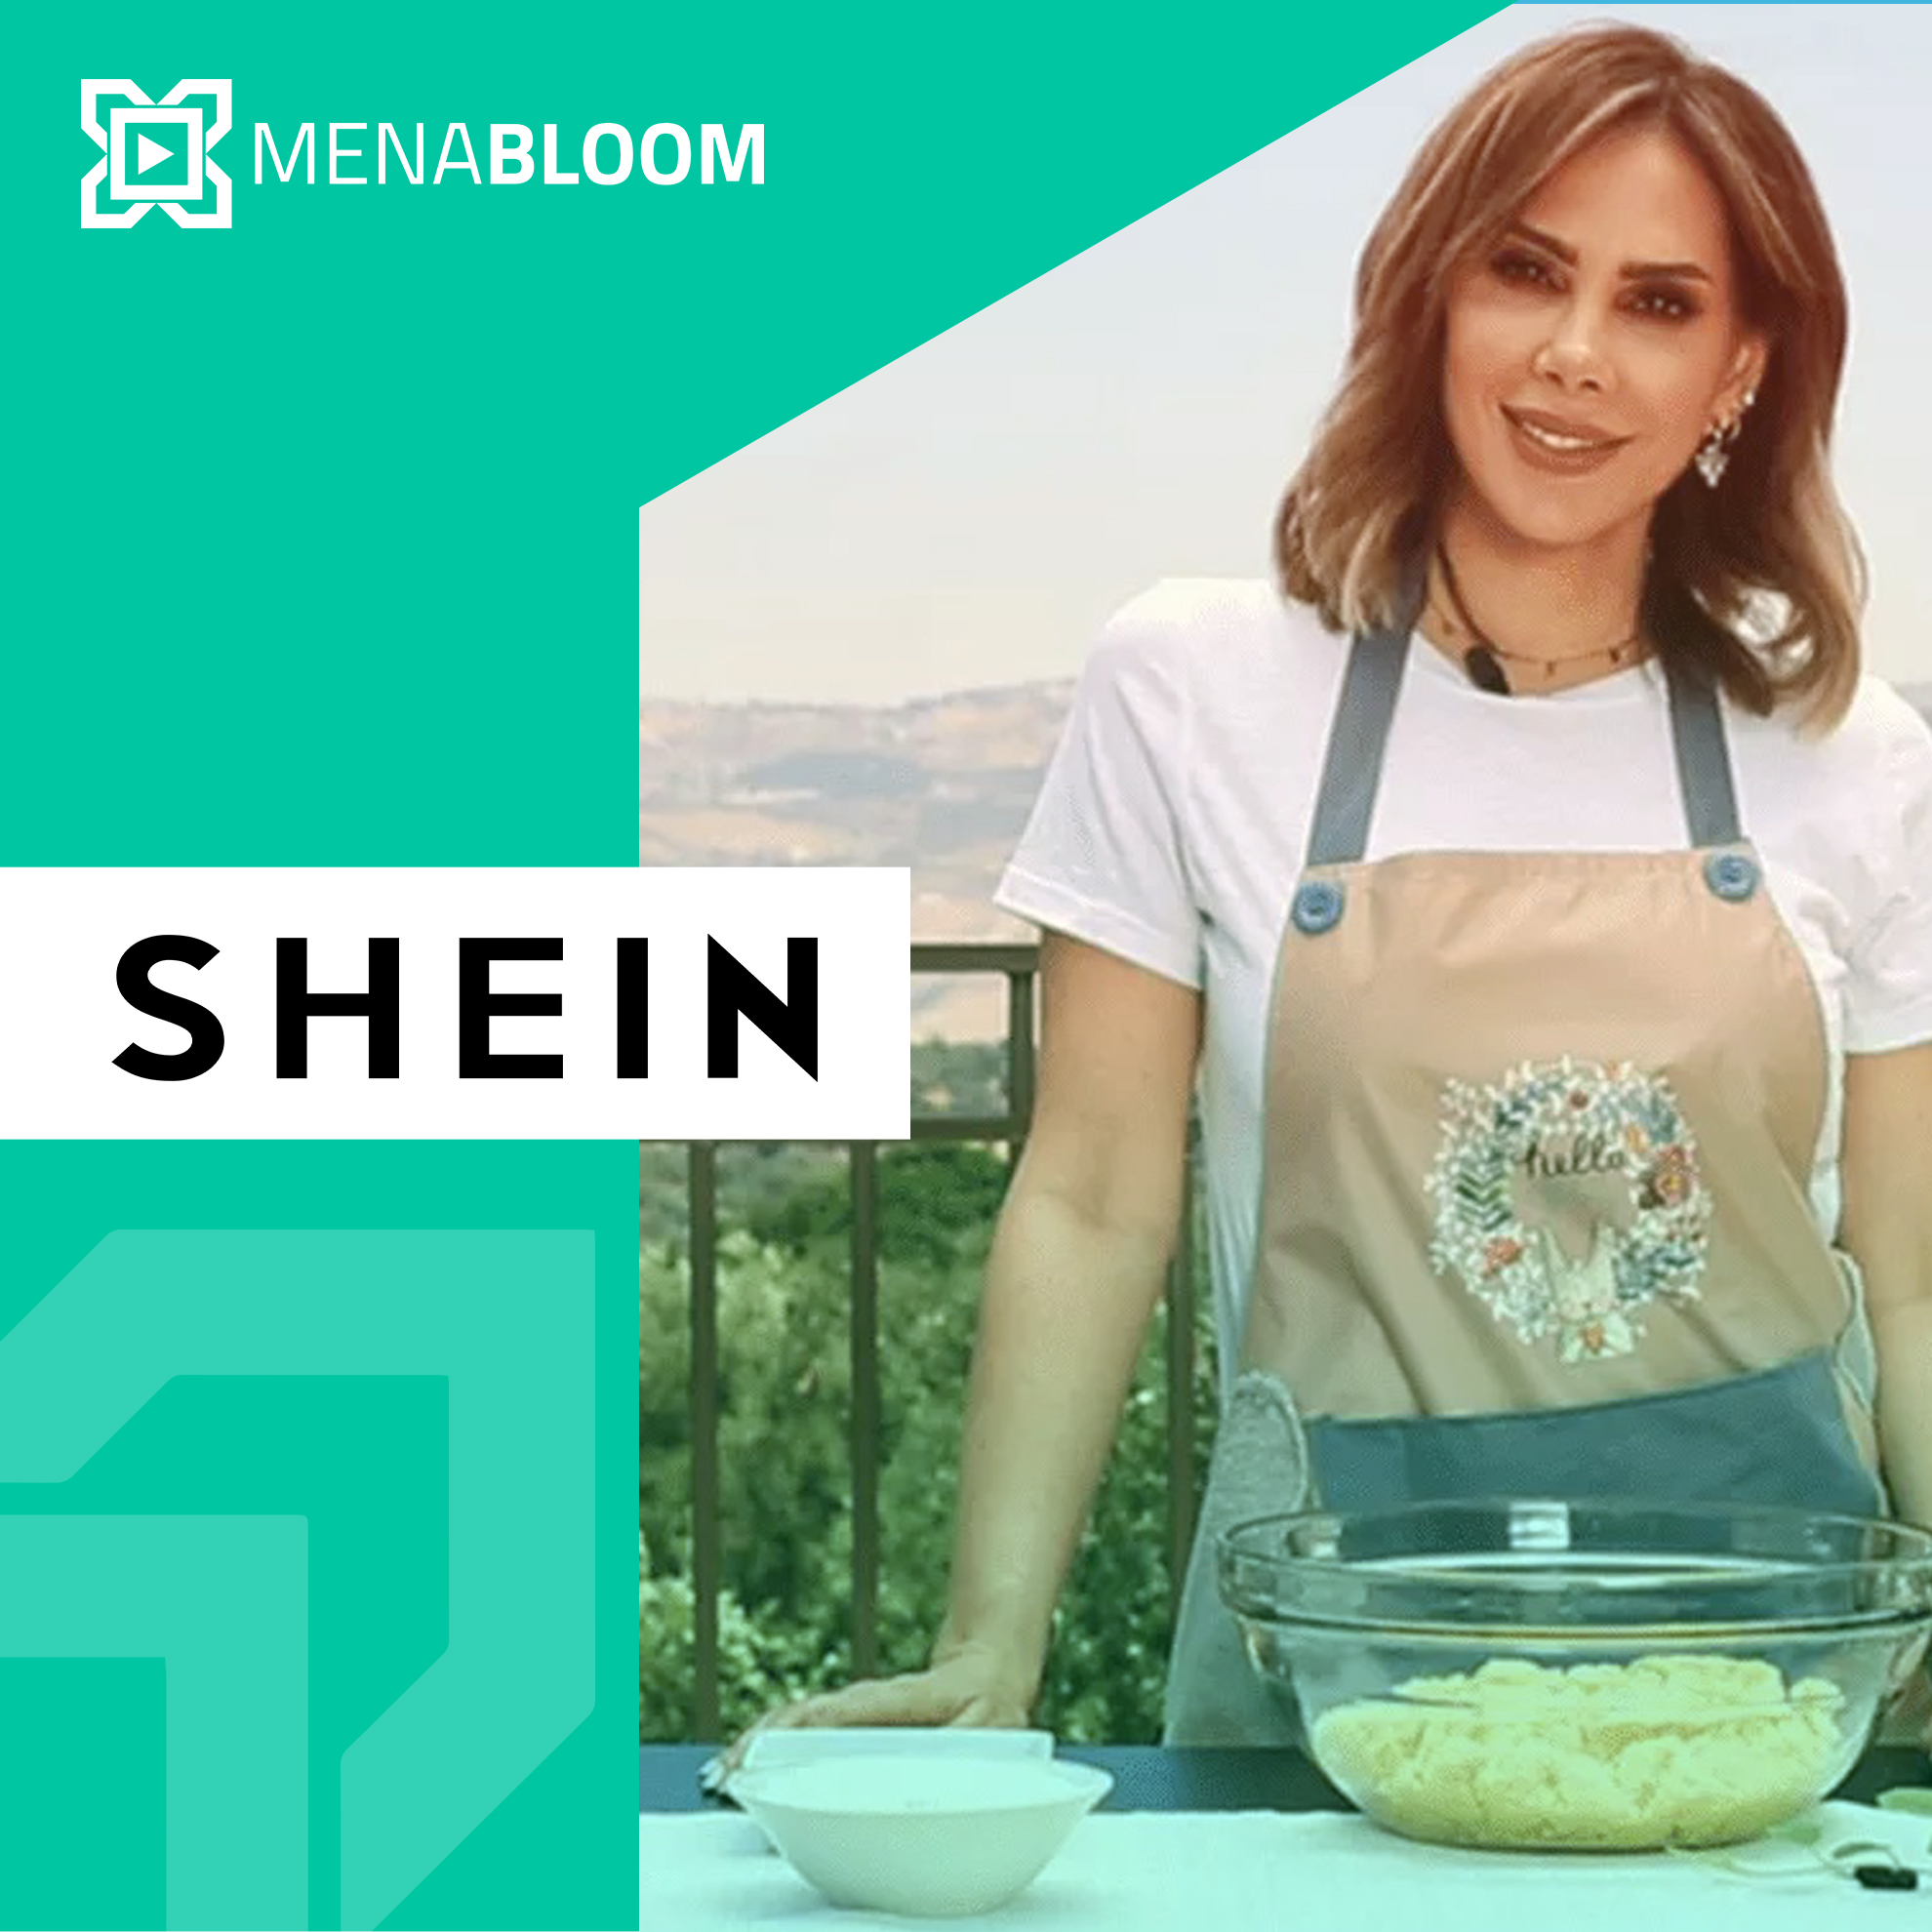 إنتاج فيديو طهي لصالح “SHEIN” بمشاركة الشيف ديما